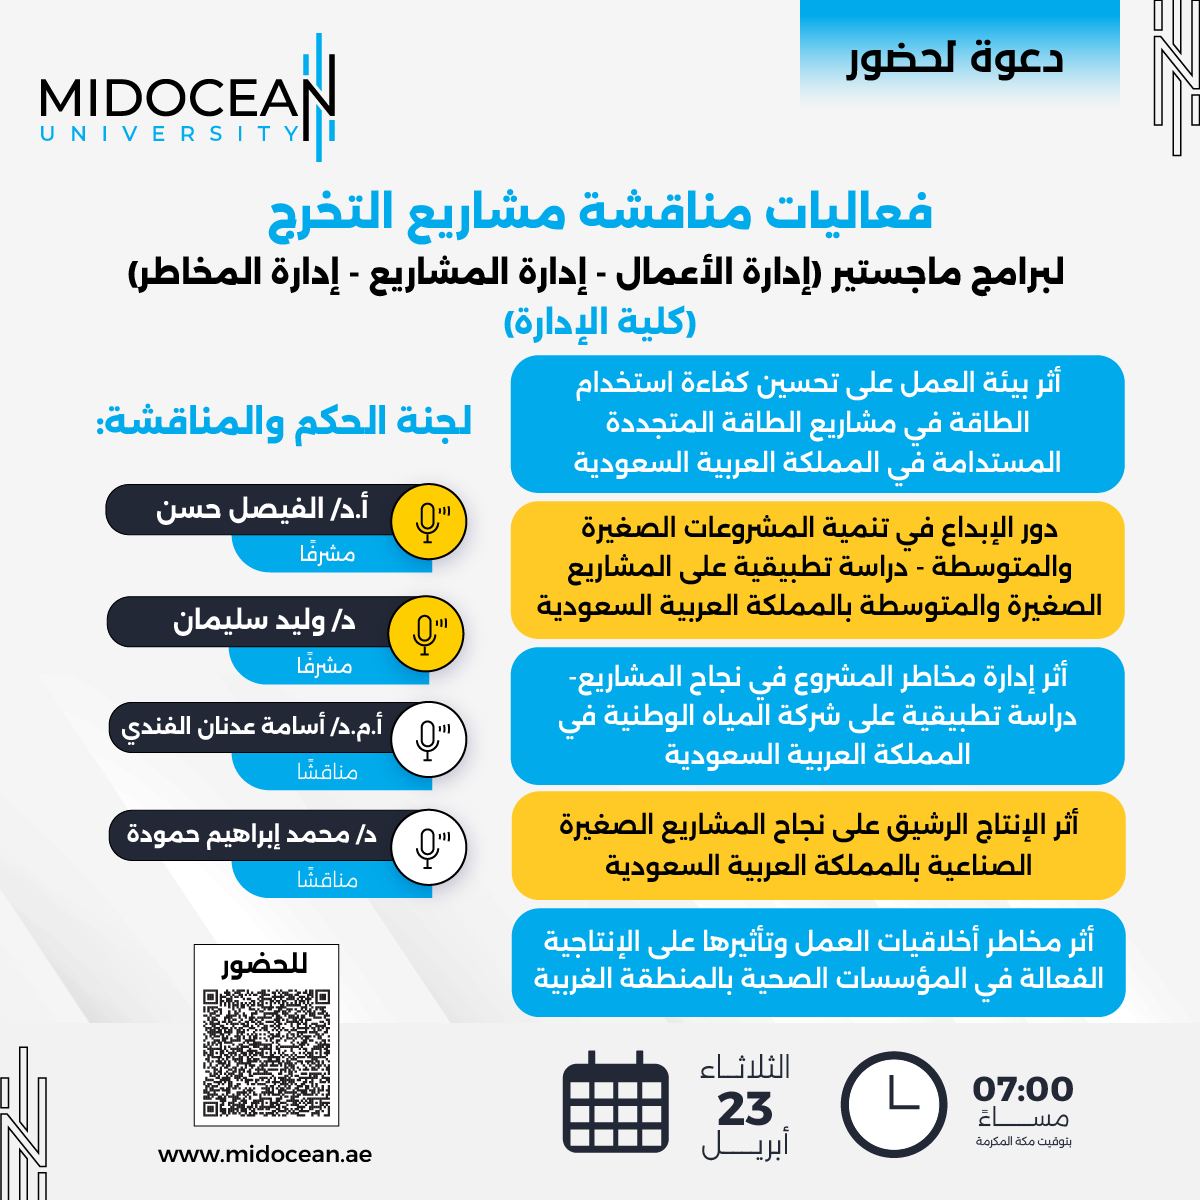 يمكنكم الحضور من خلال الرابط التالي: 
teams.microsoft.com/l/meetup-join/…

⁧#جامعة_ميدأوشن⁩ 
⁦#MidoceanUniversity⁩